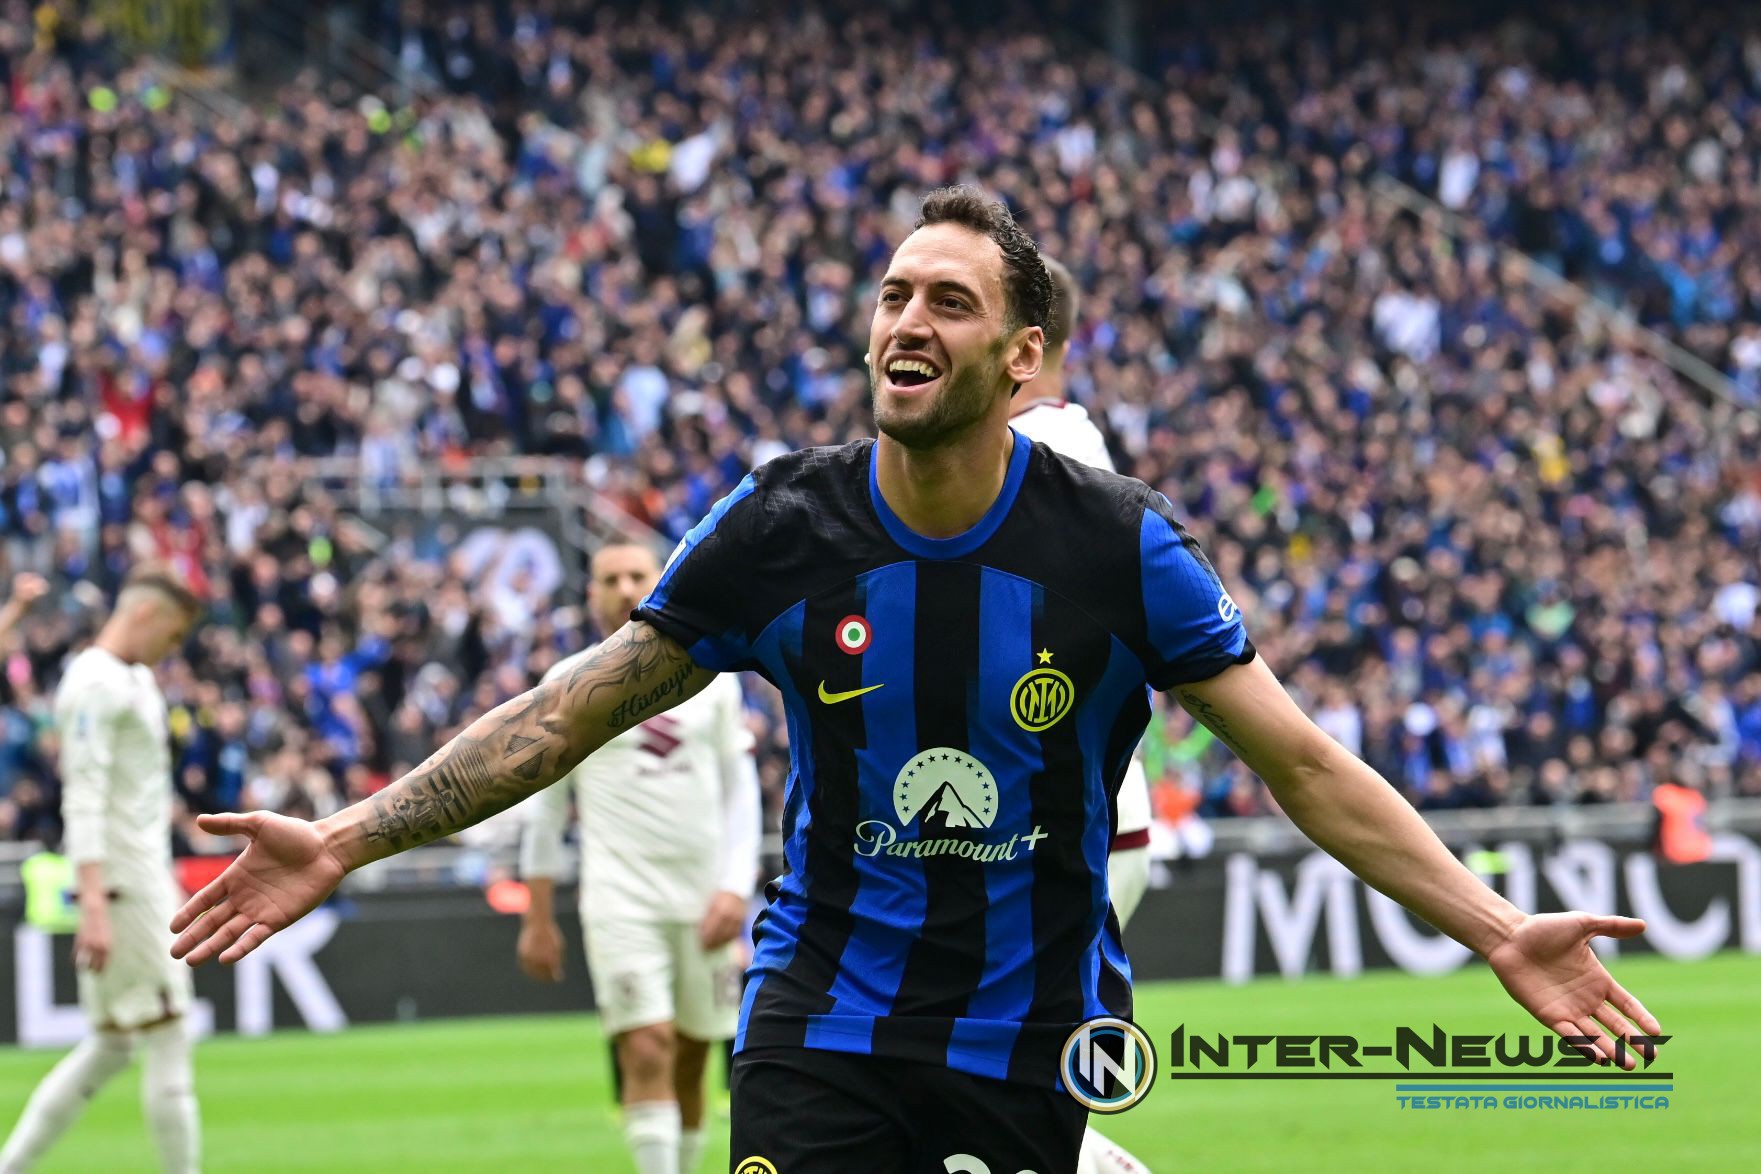 Calhanoglu miglior giocatore in Serie A, in Inghilterra: «Inter ad un altro livello!»